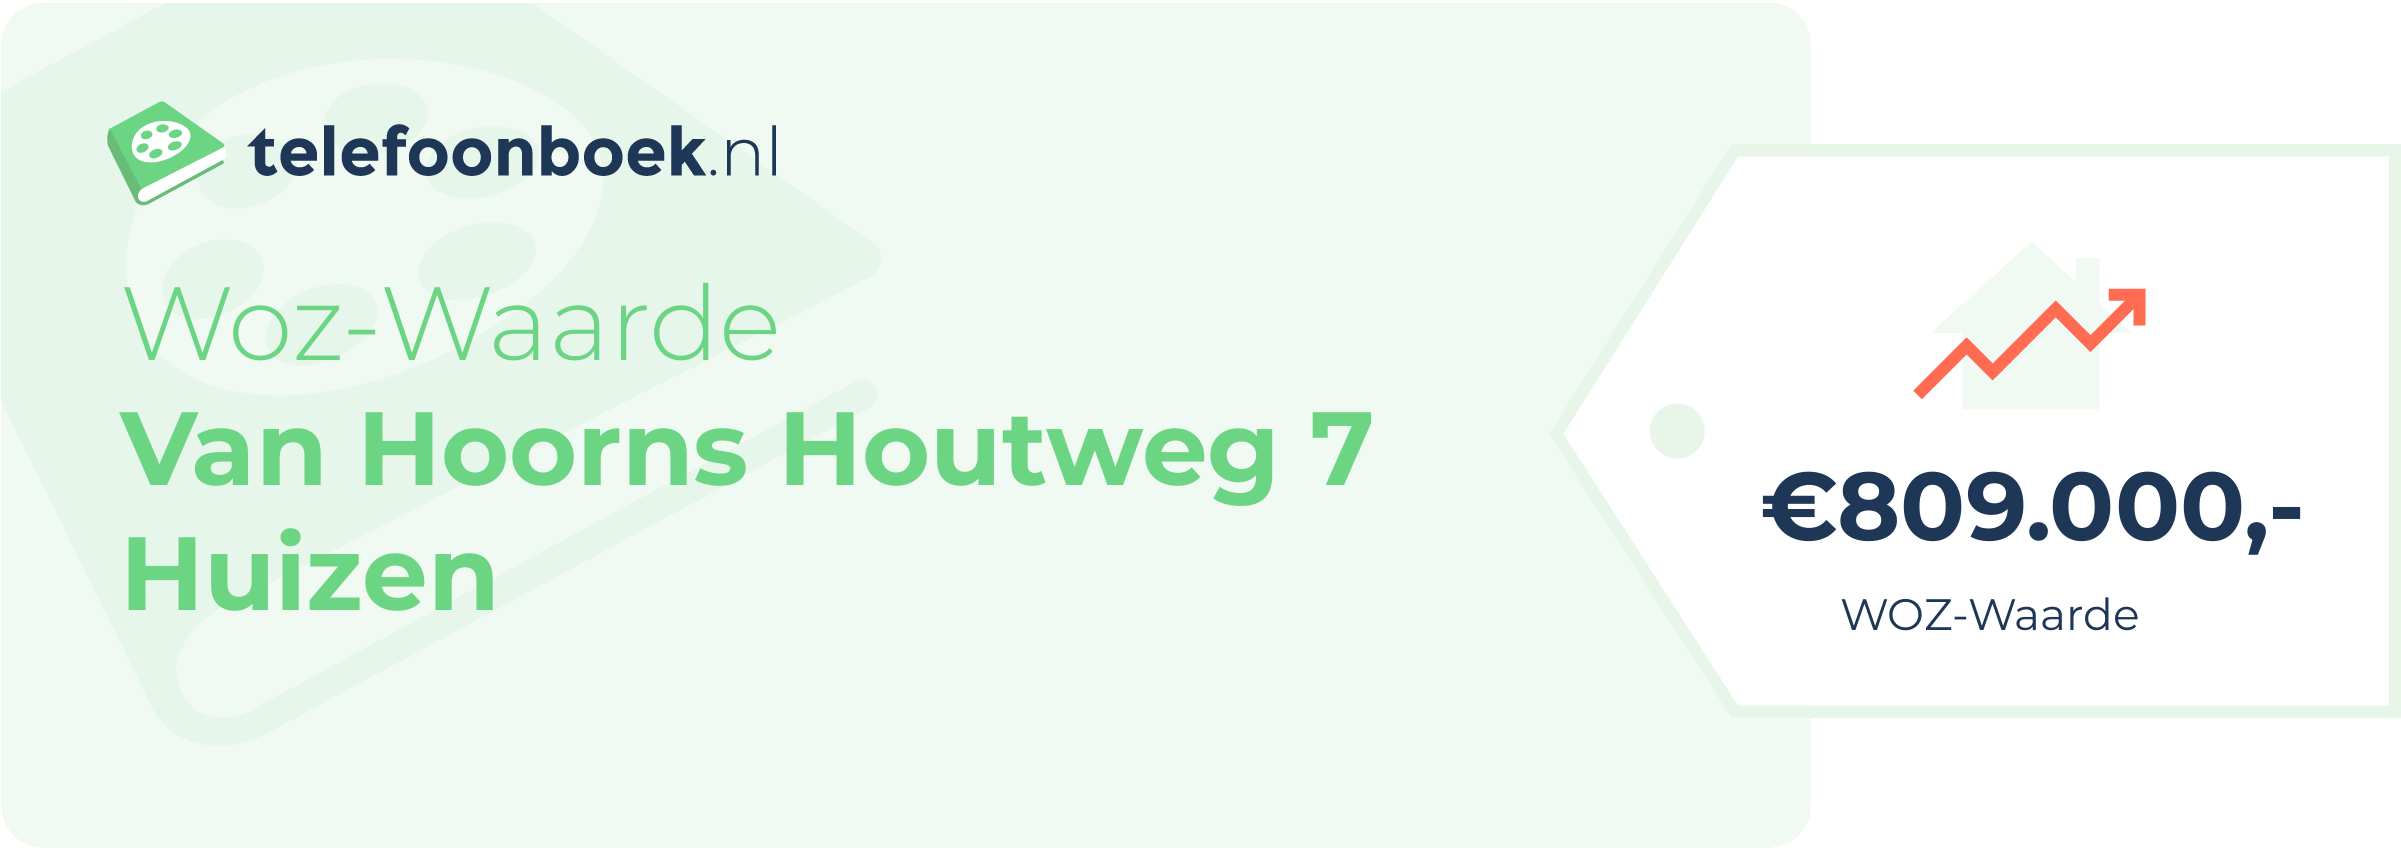 WOZ-waarde Van Hoorns Houtweg 7 Huizen